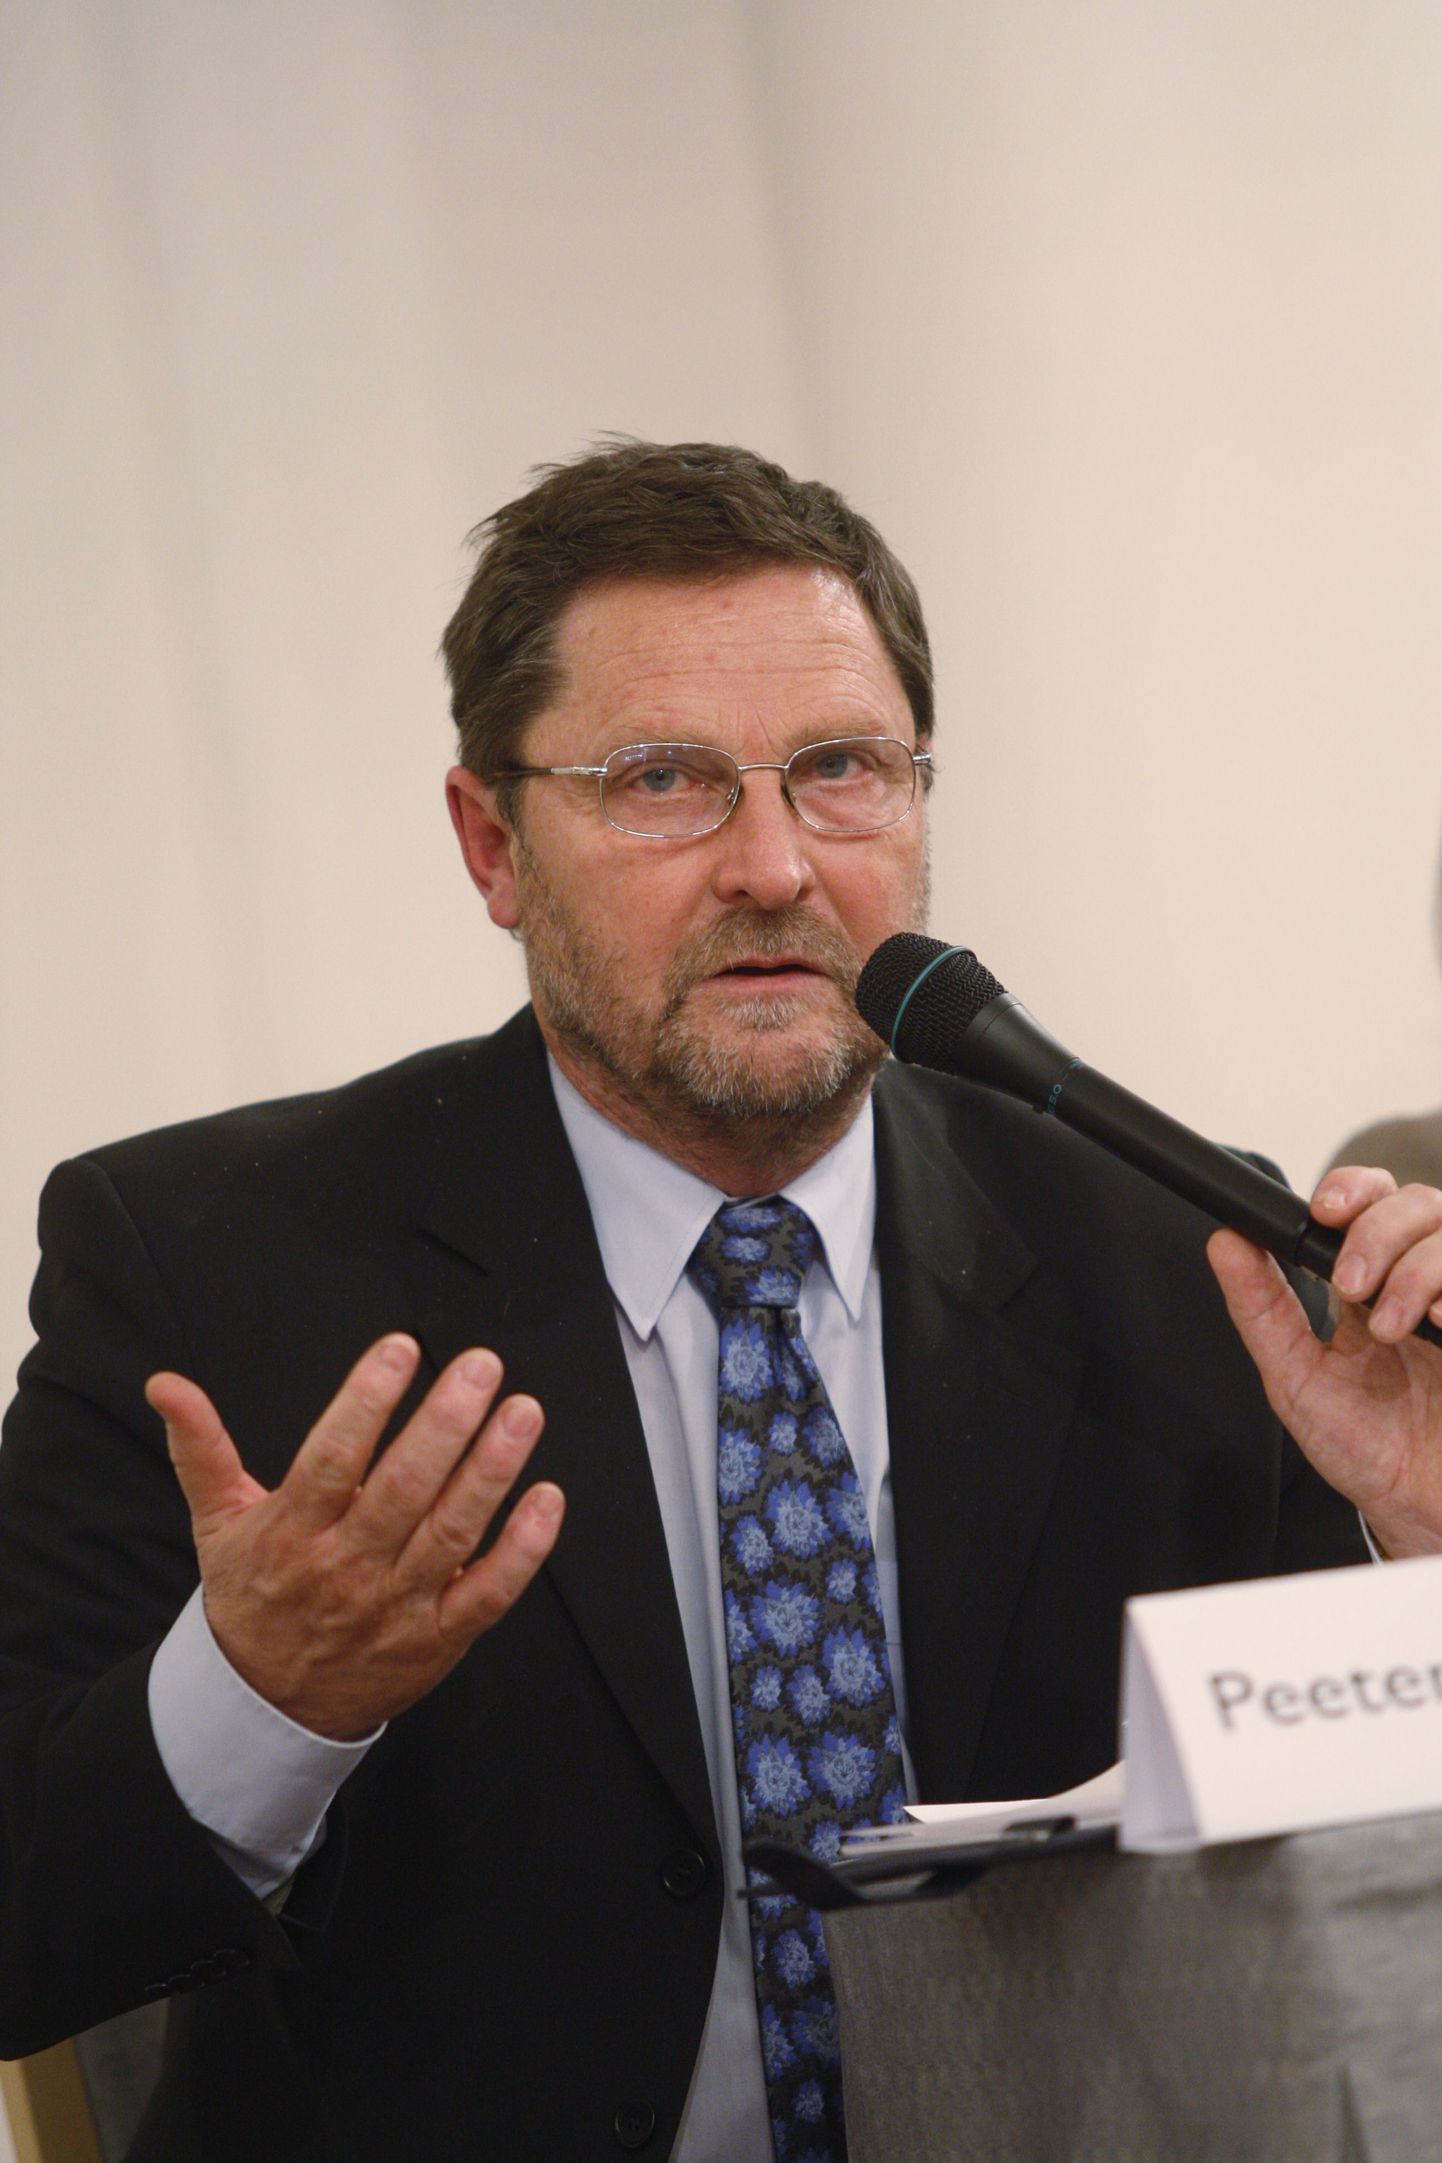 Peeter Kreitzberg